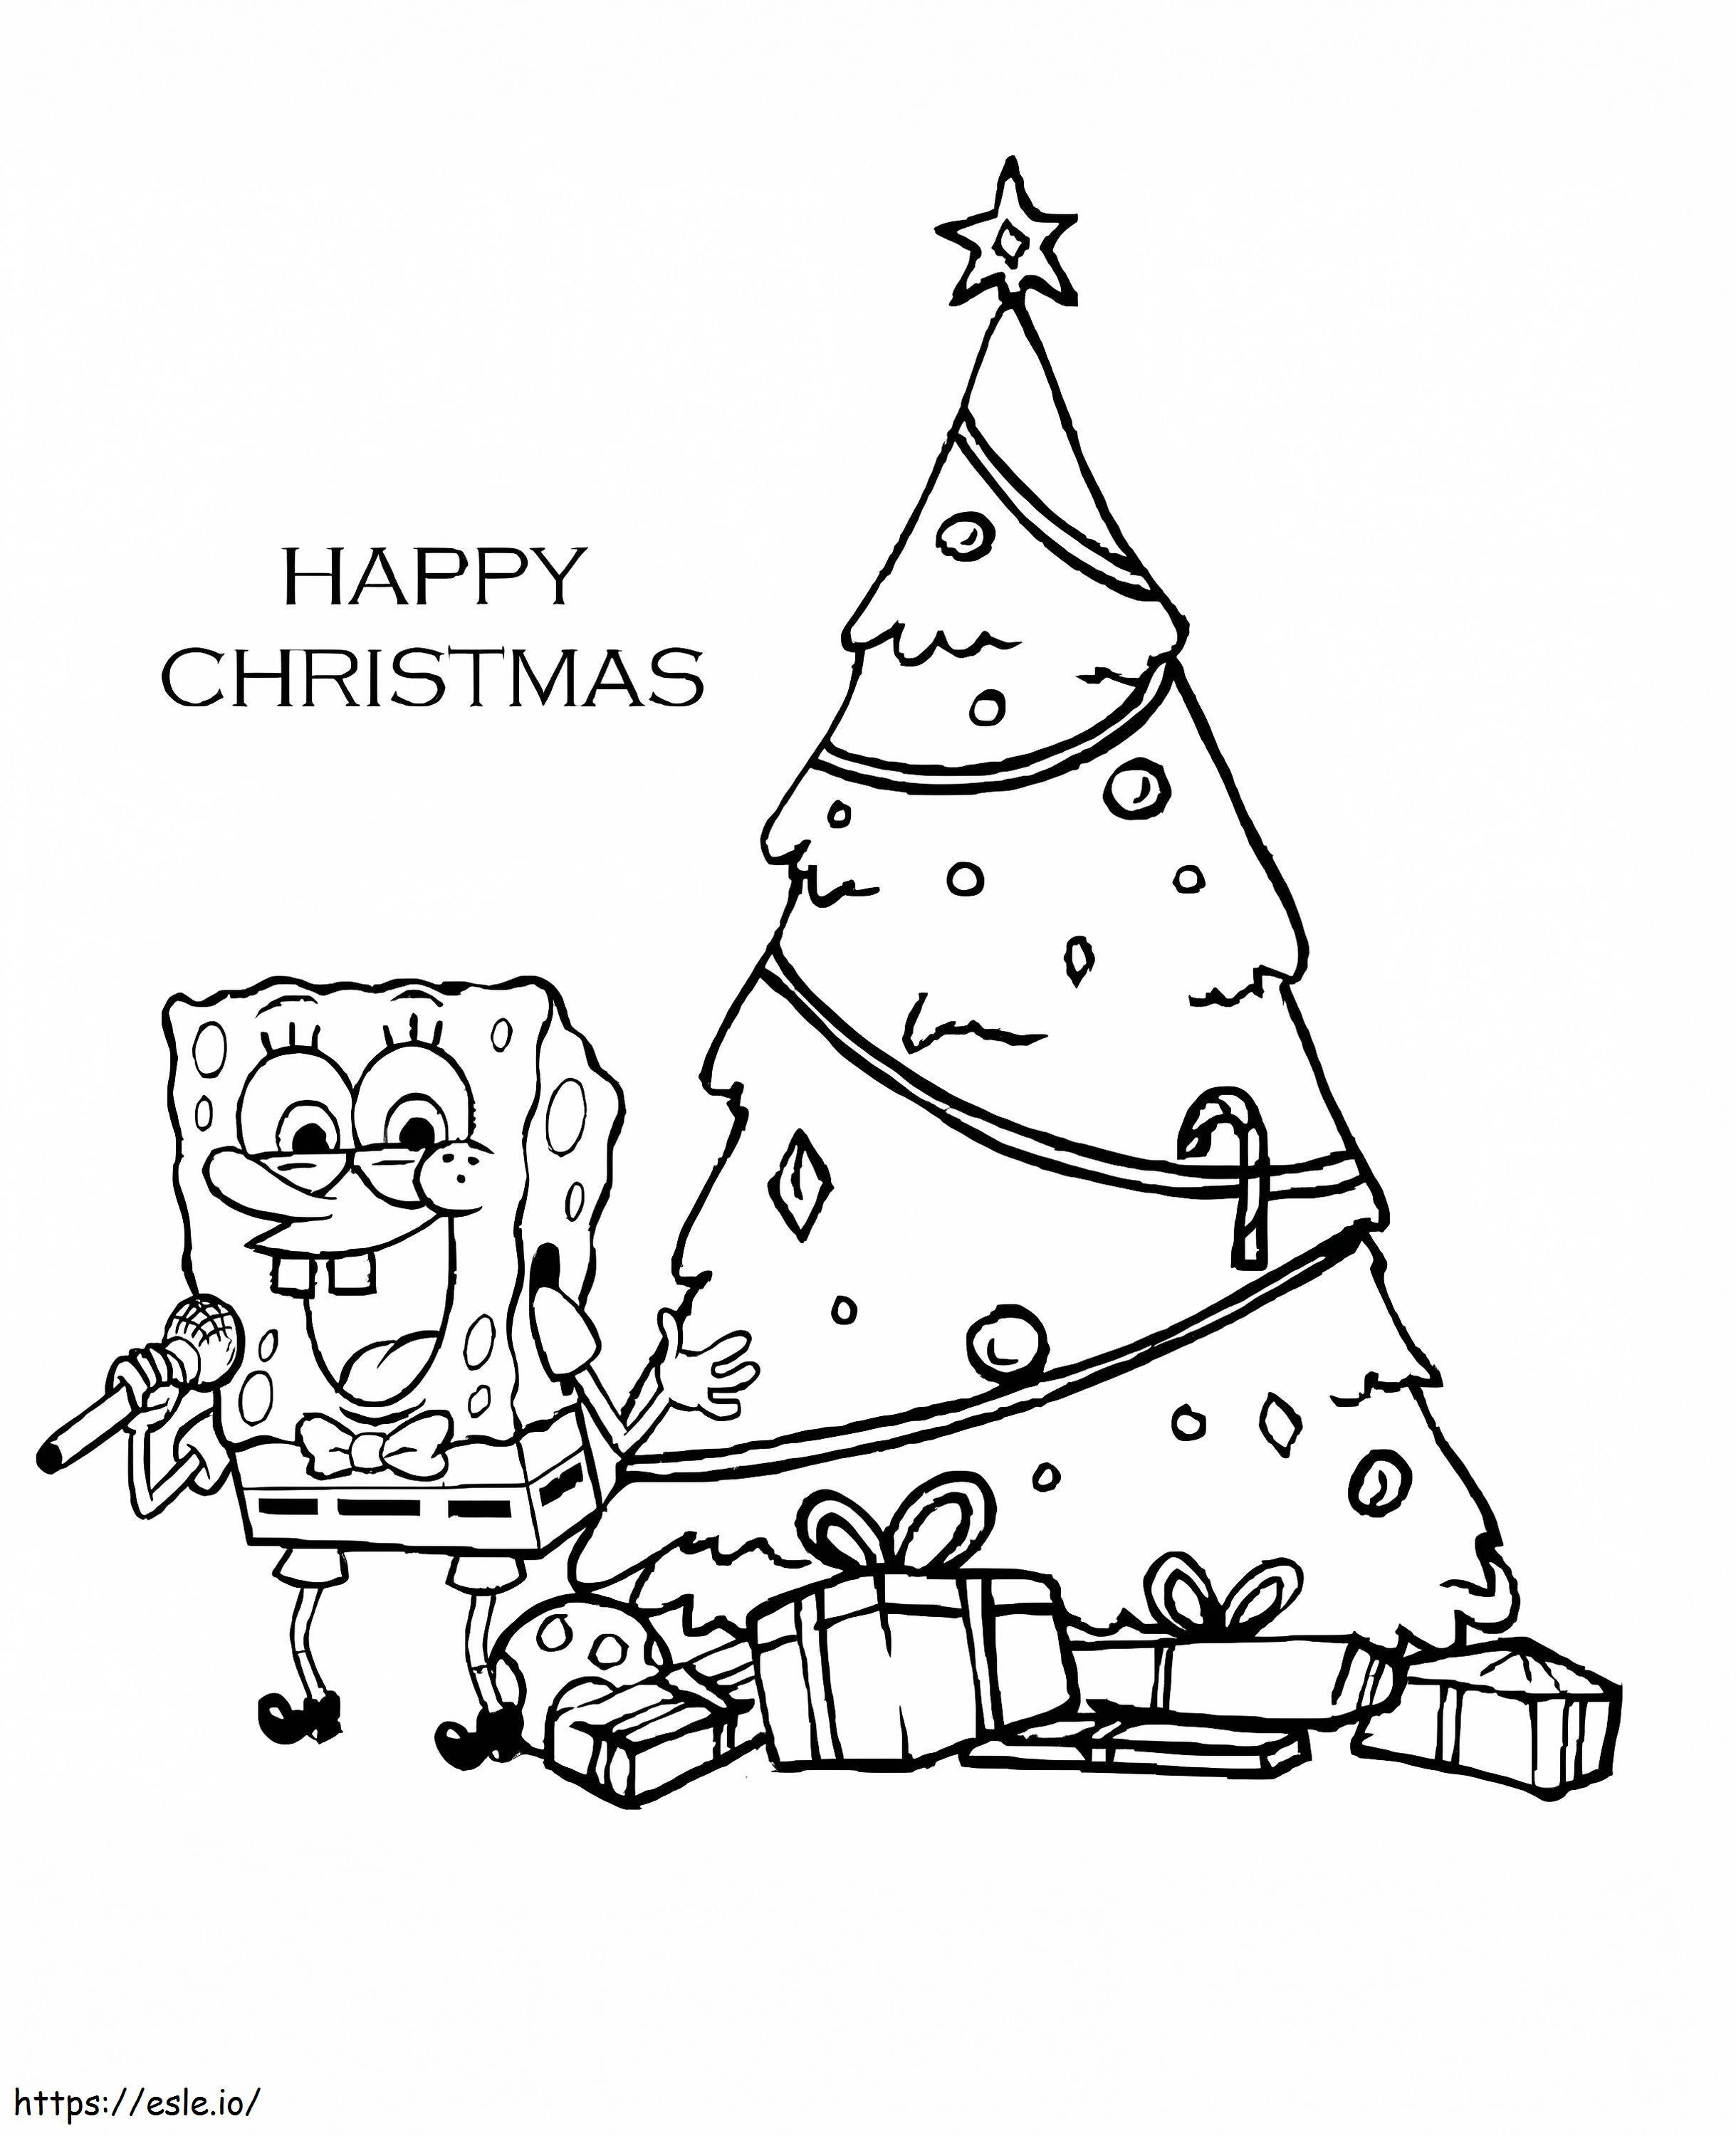 Spongebob Singing At Christmas coloring page